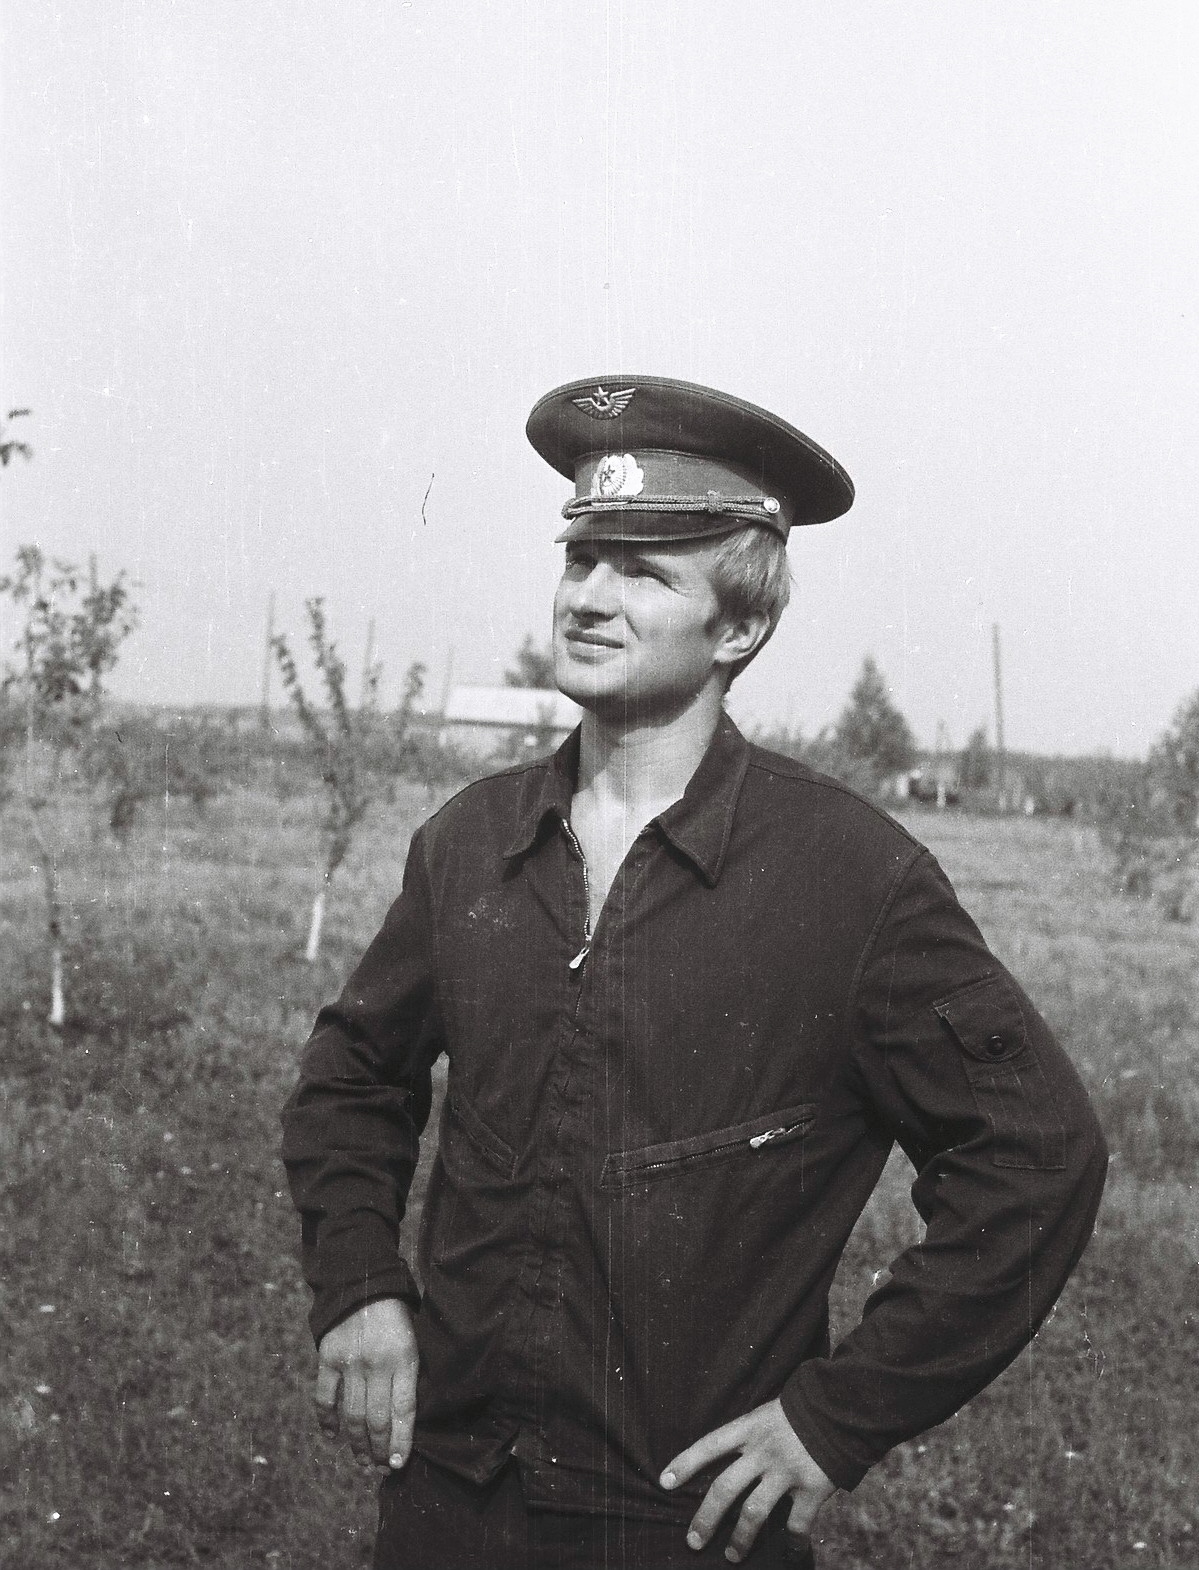 Иванов Борис Сергеевич 1955г